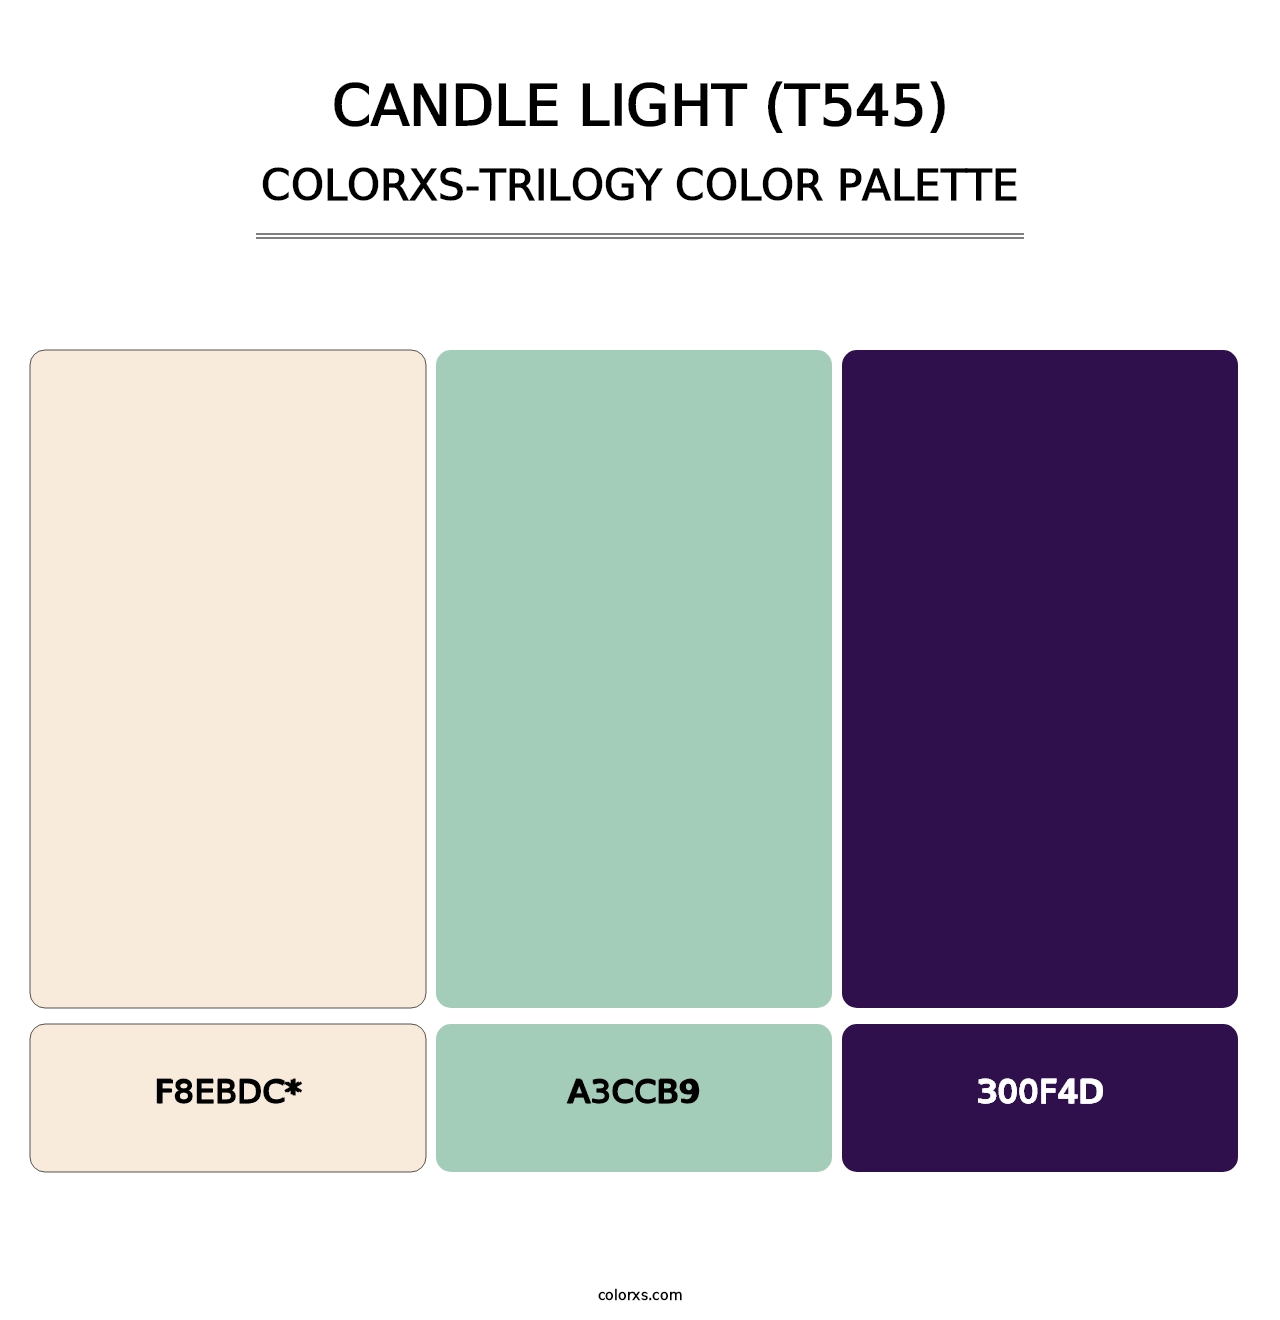 Candle Light (T545) - Colorxs Trilogy Palette